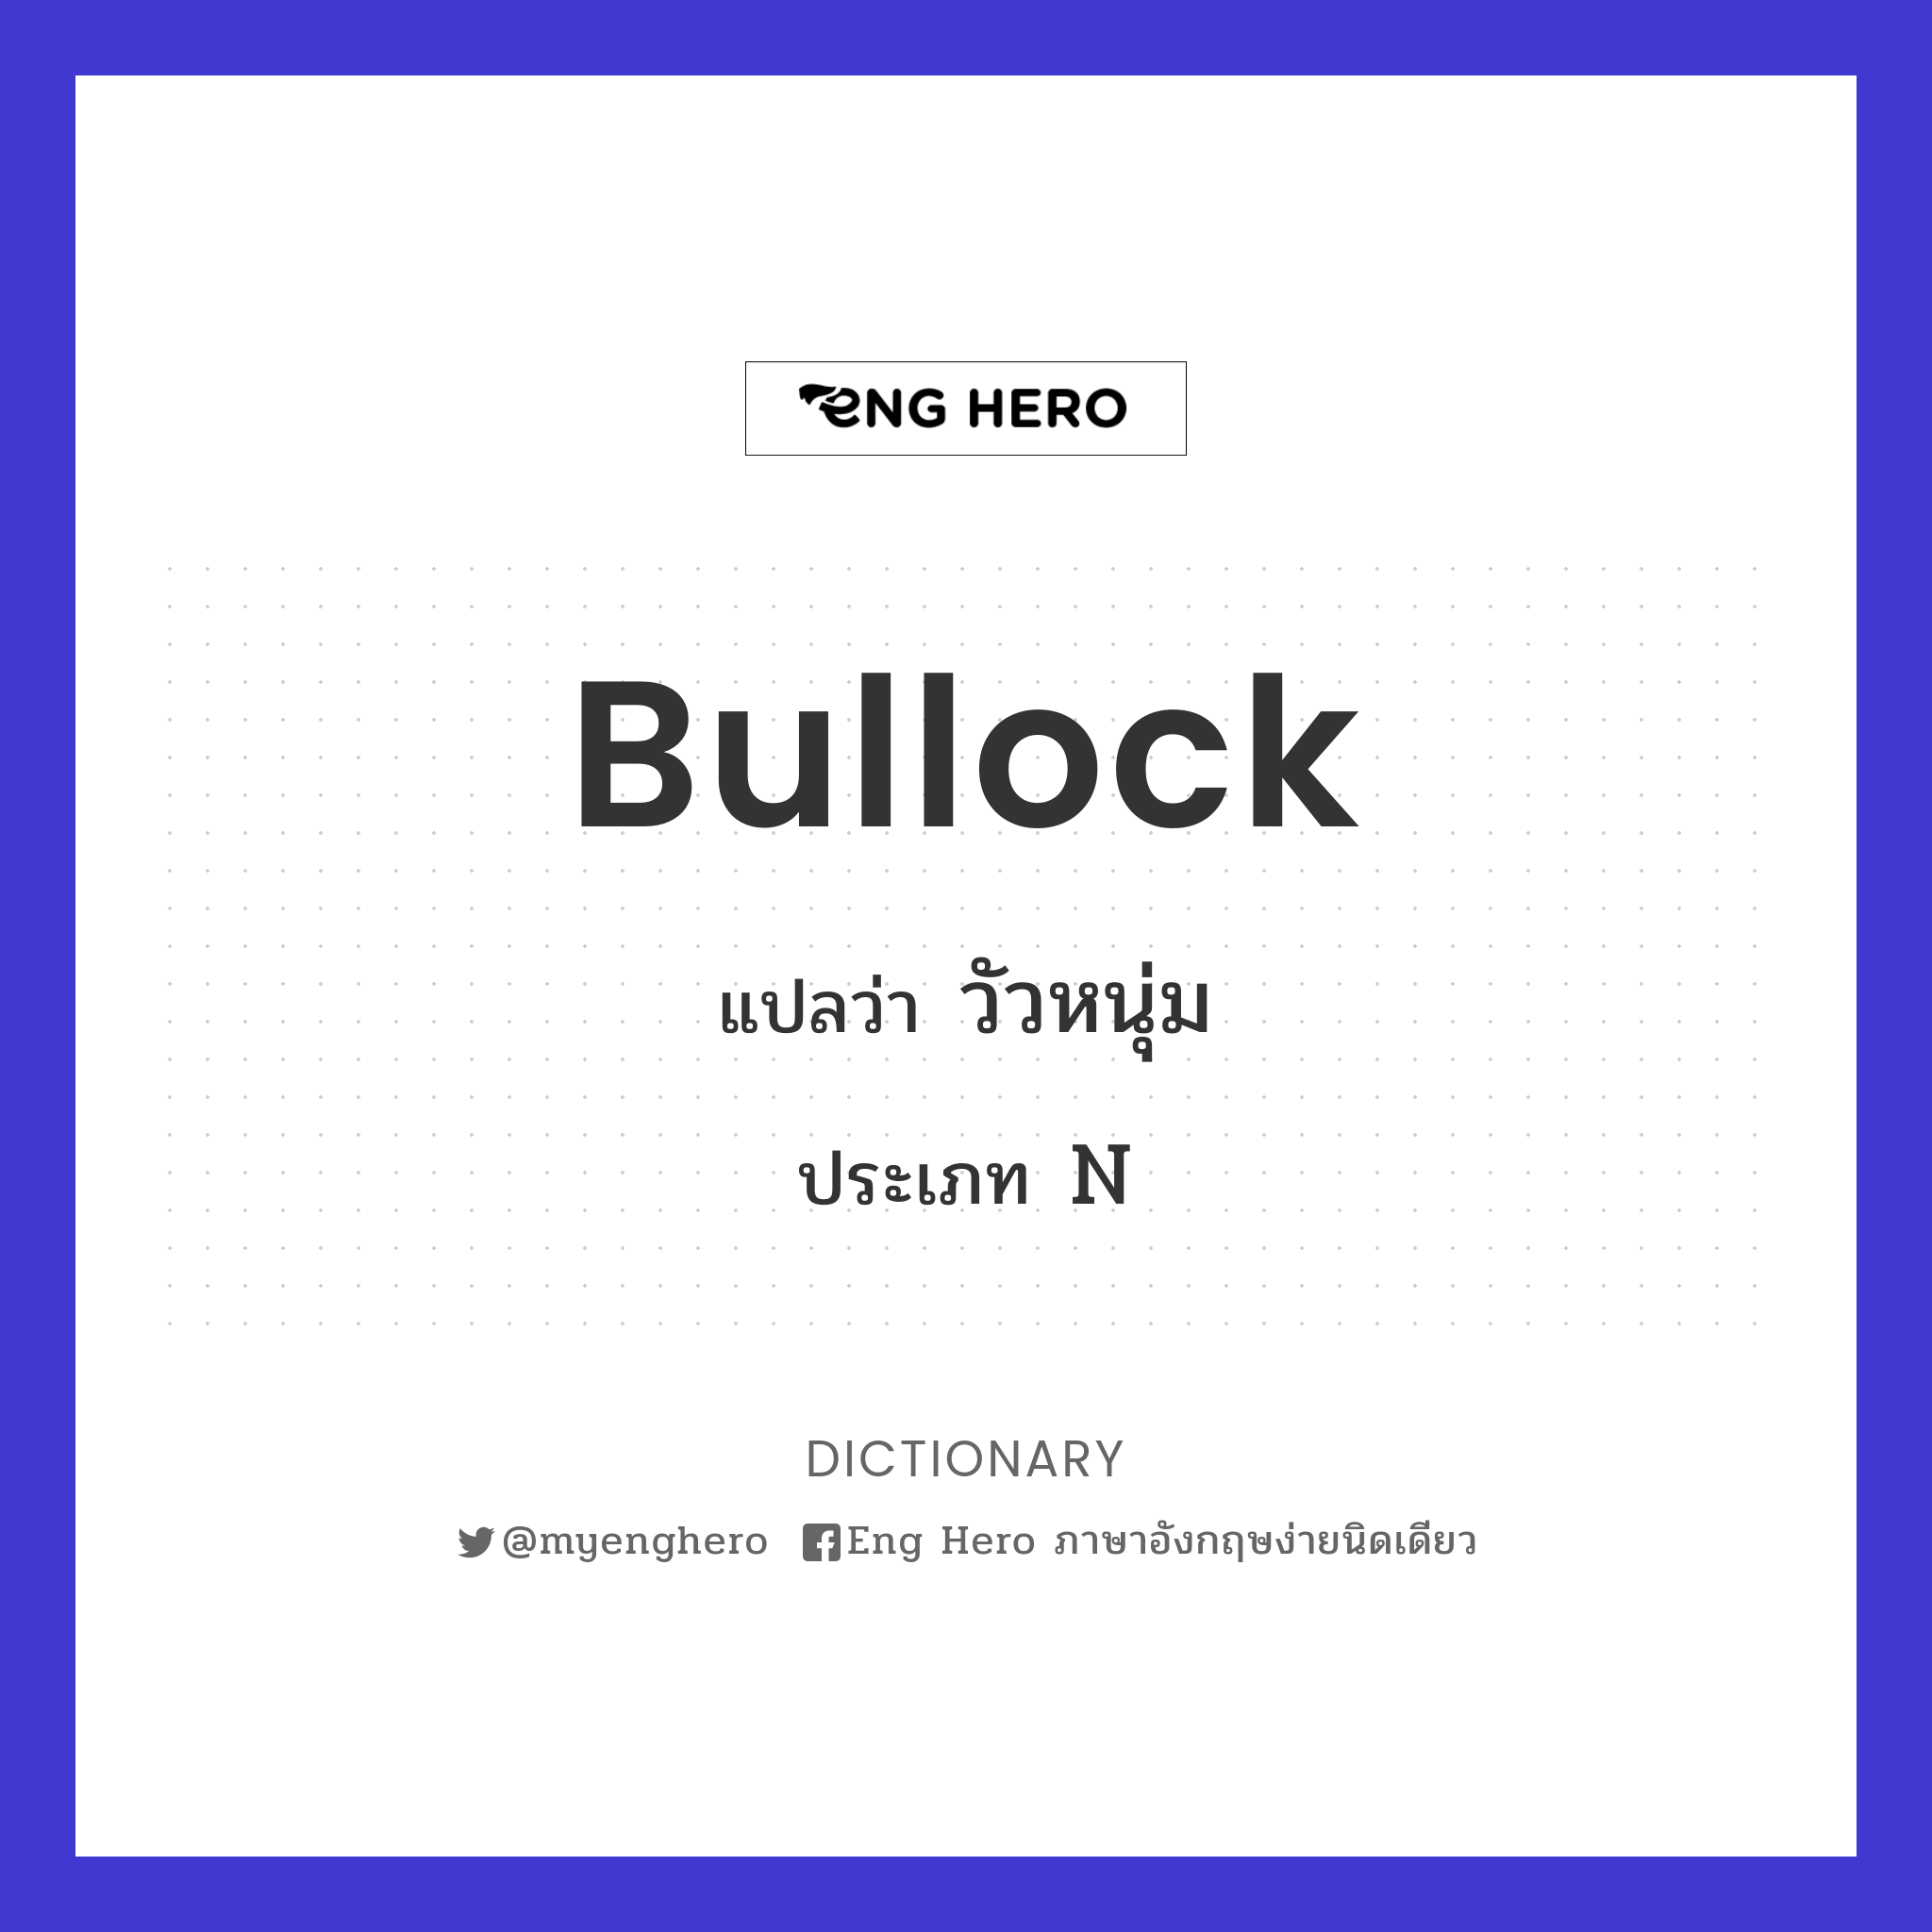 bullock